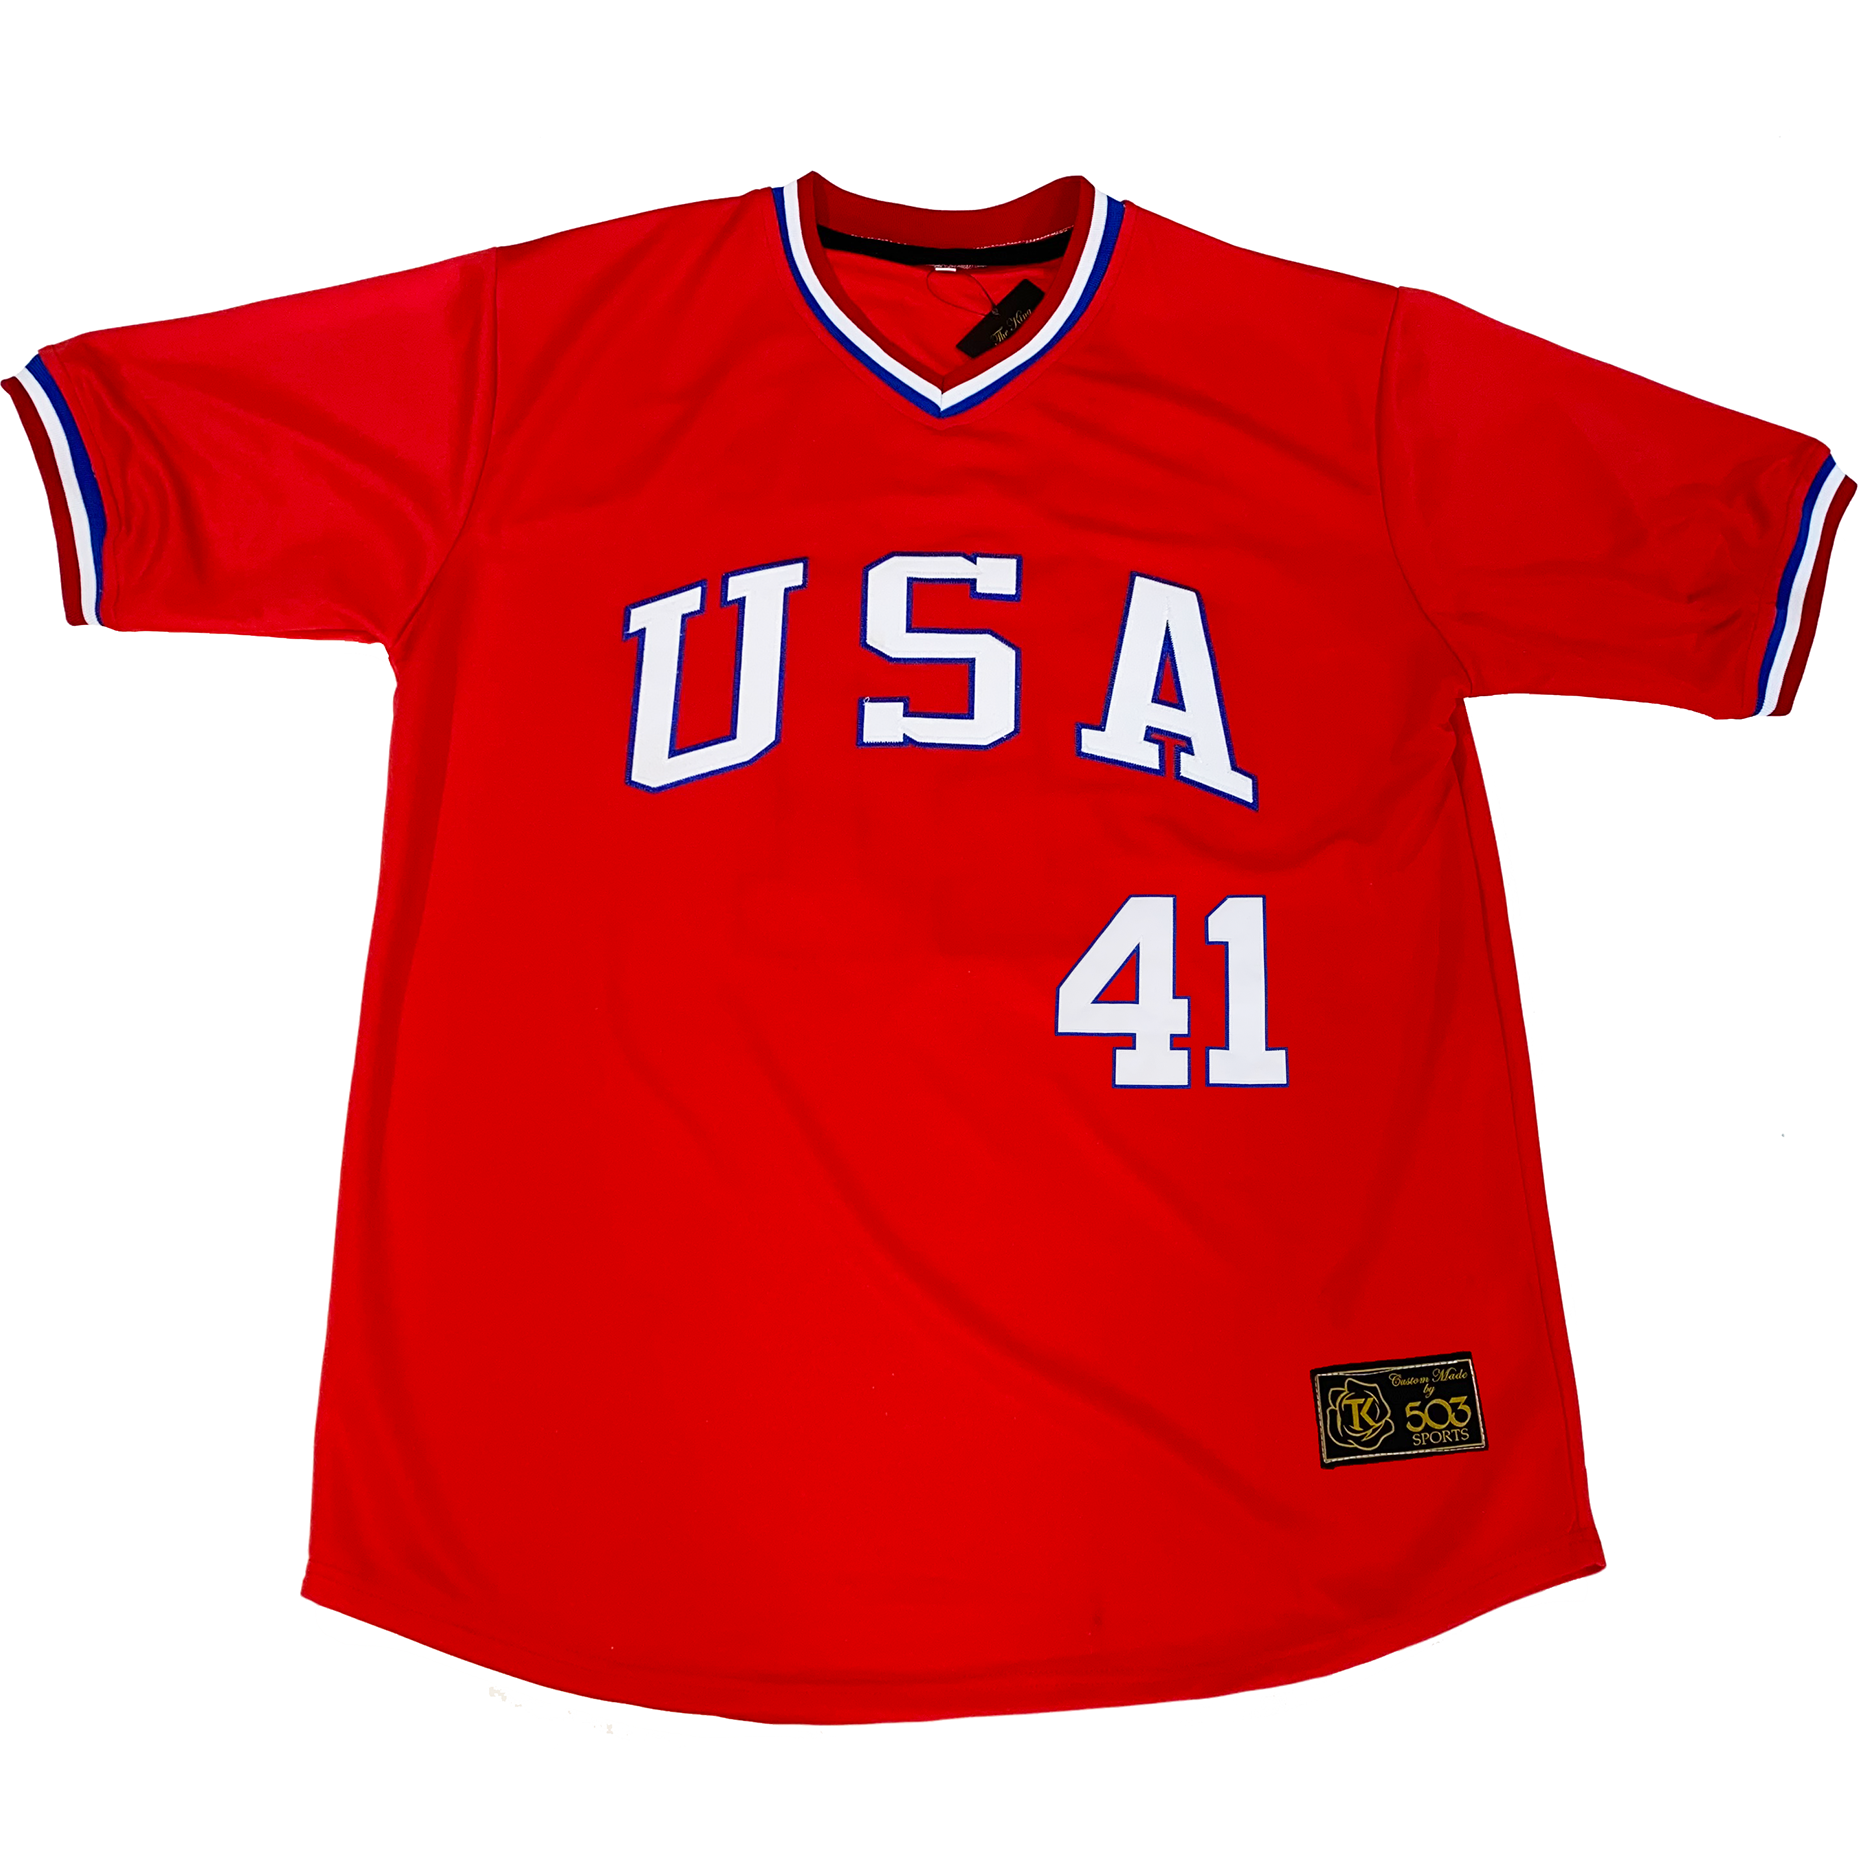 USA Baseball Jersey – Nopales Clothing